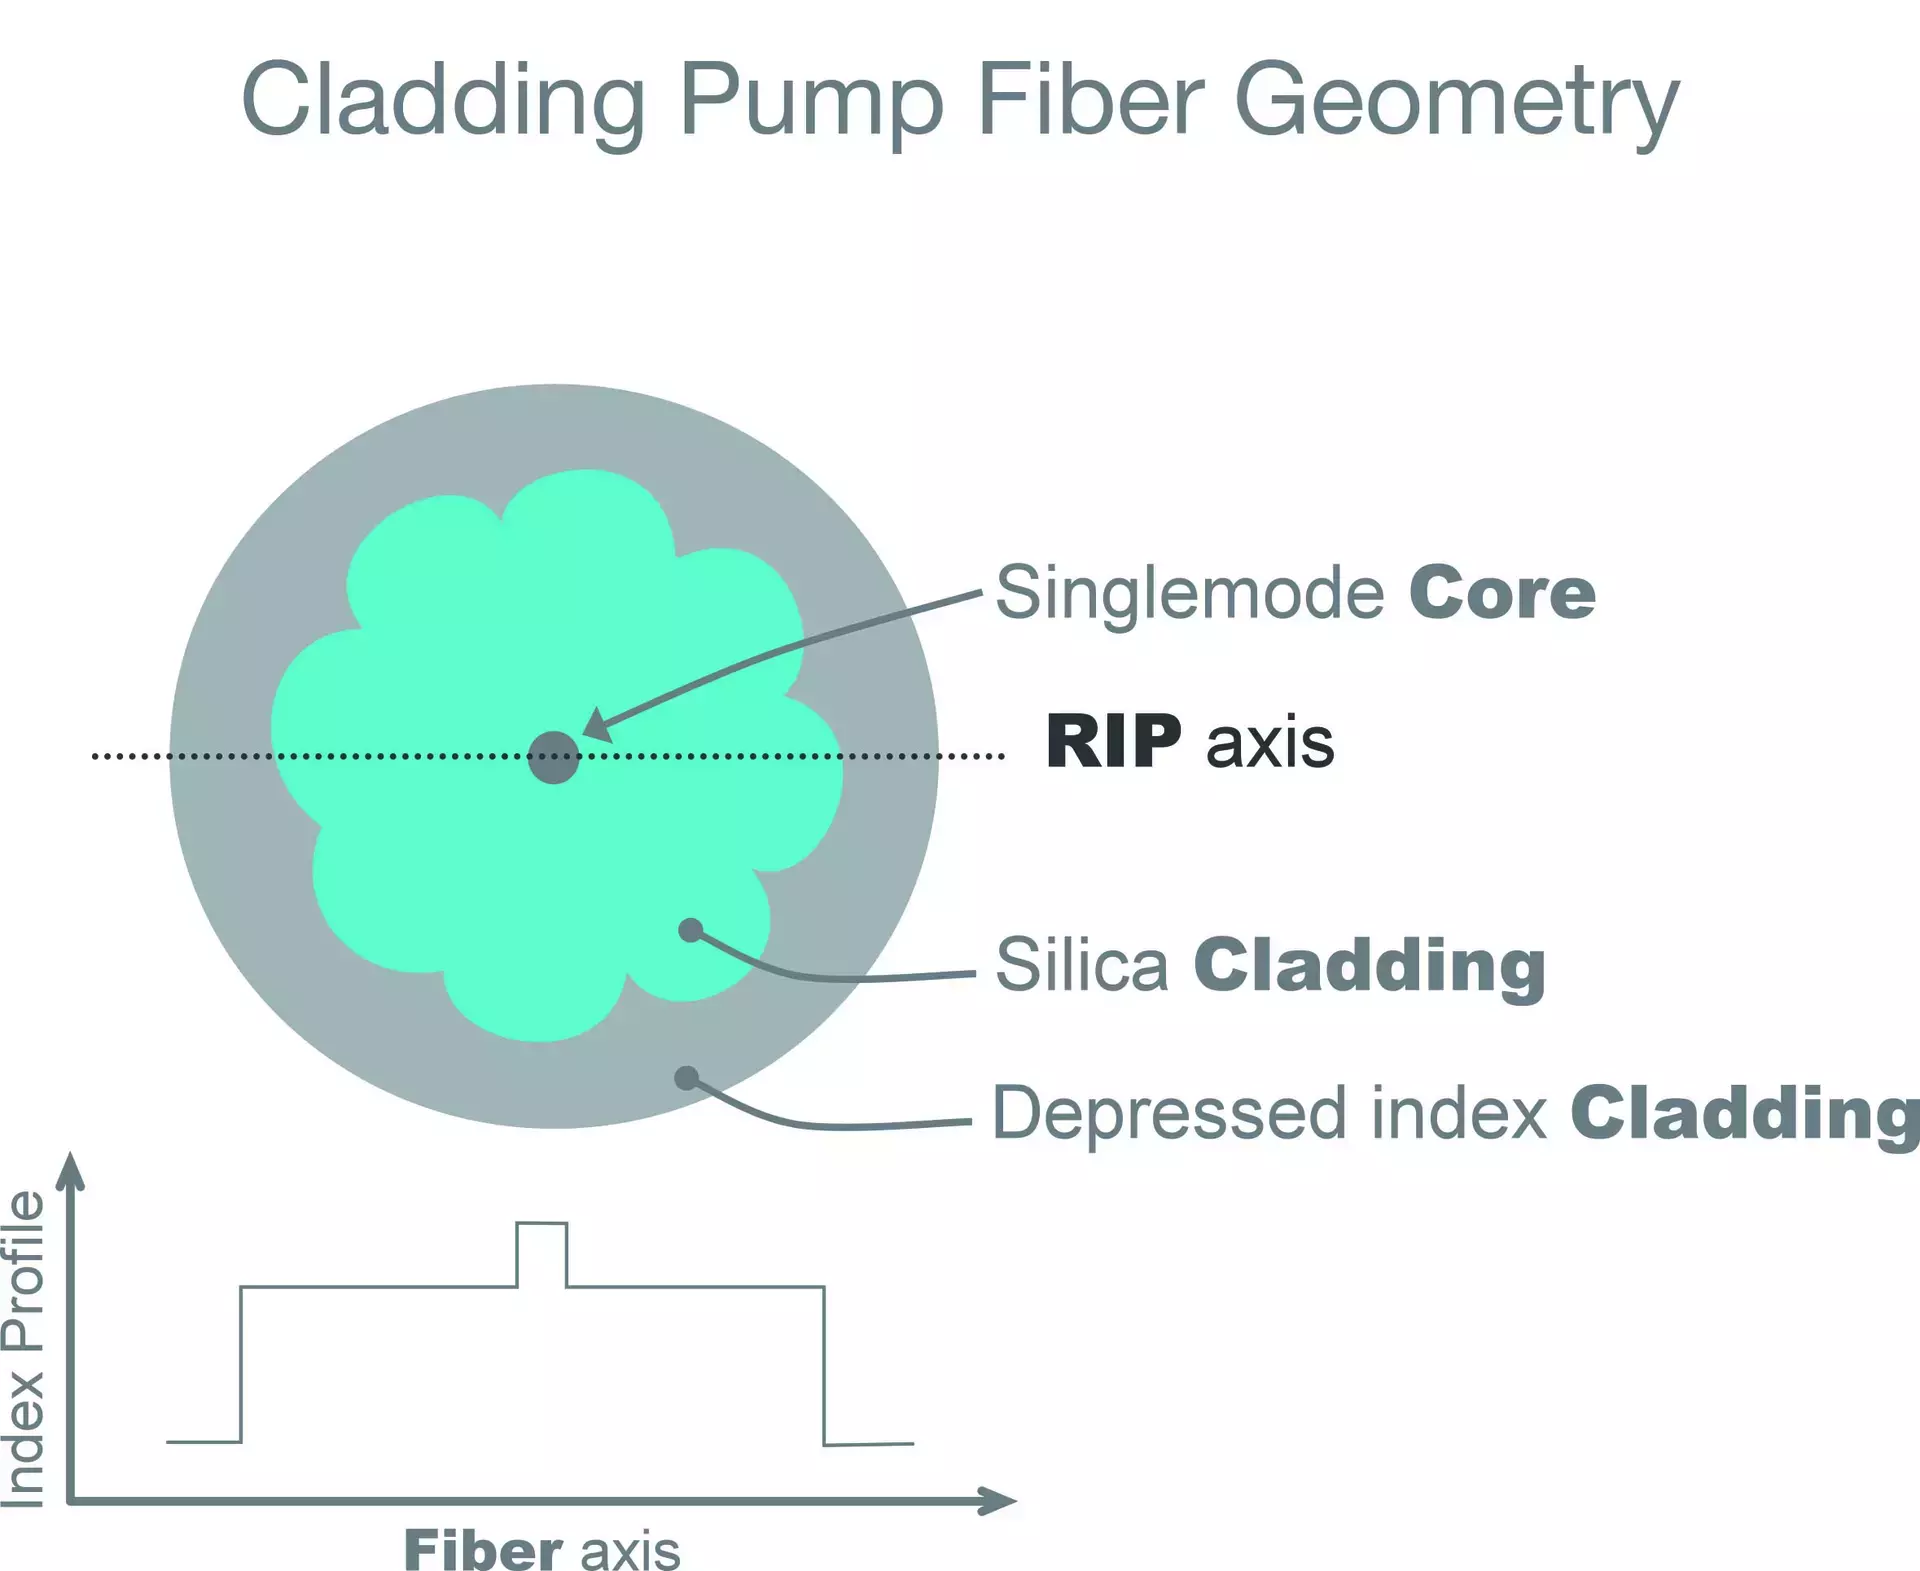 Cladding Pump Fiber